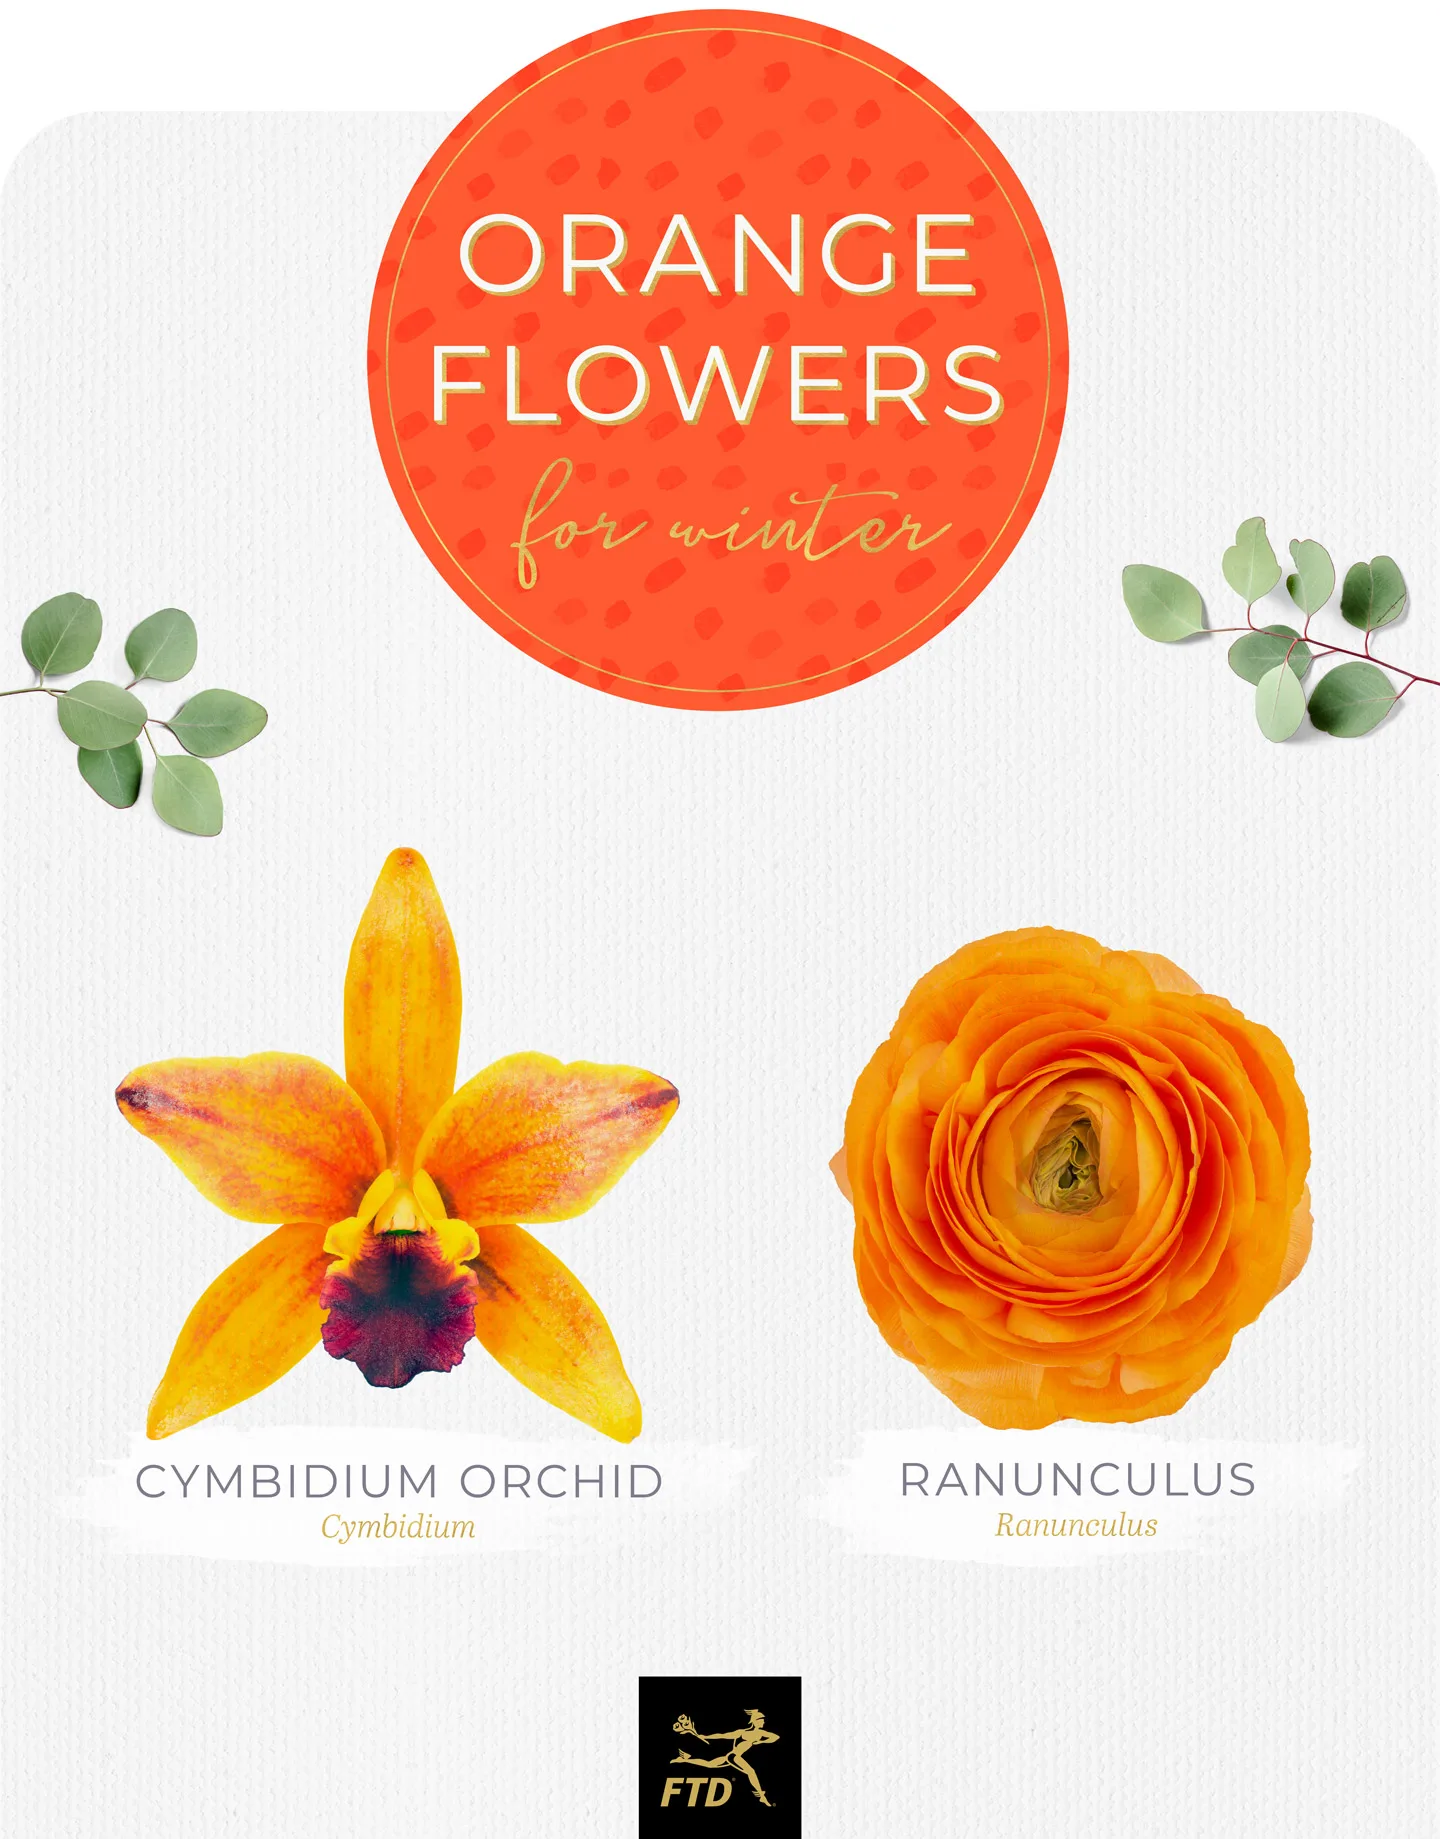 20 Types of Orange Flowers